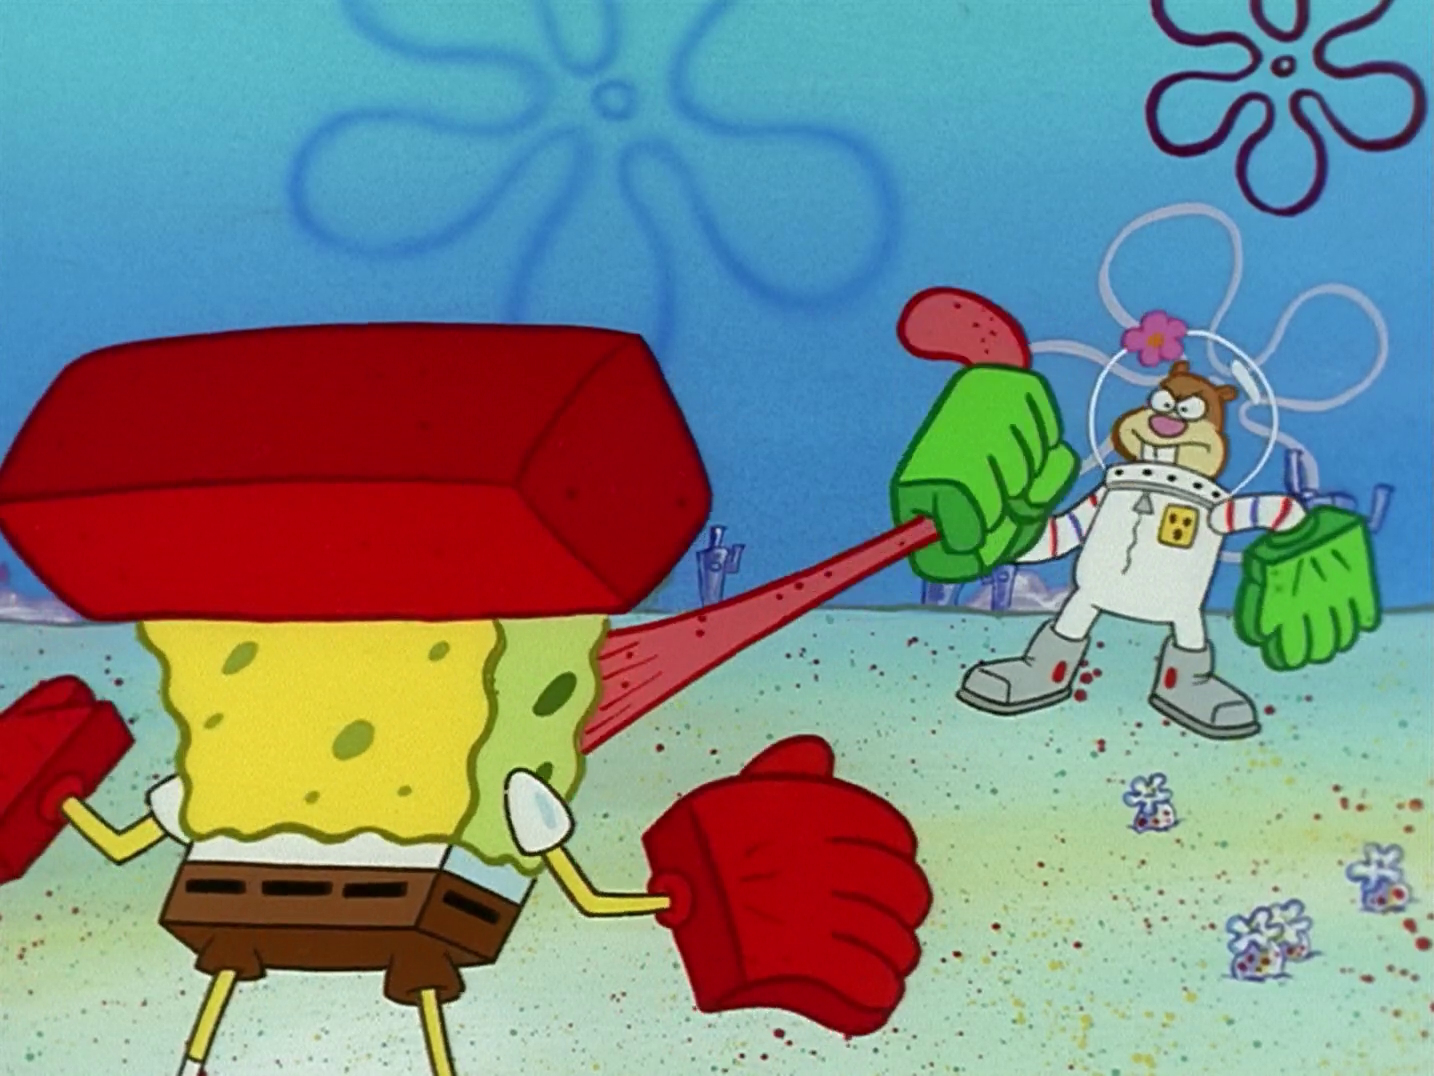 spongebob doing karate